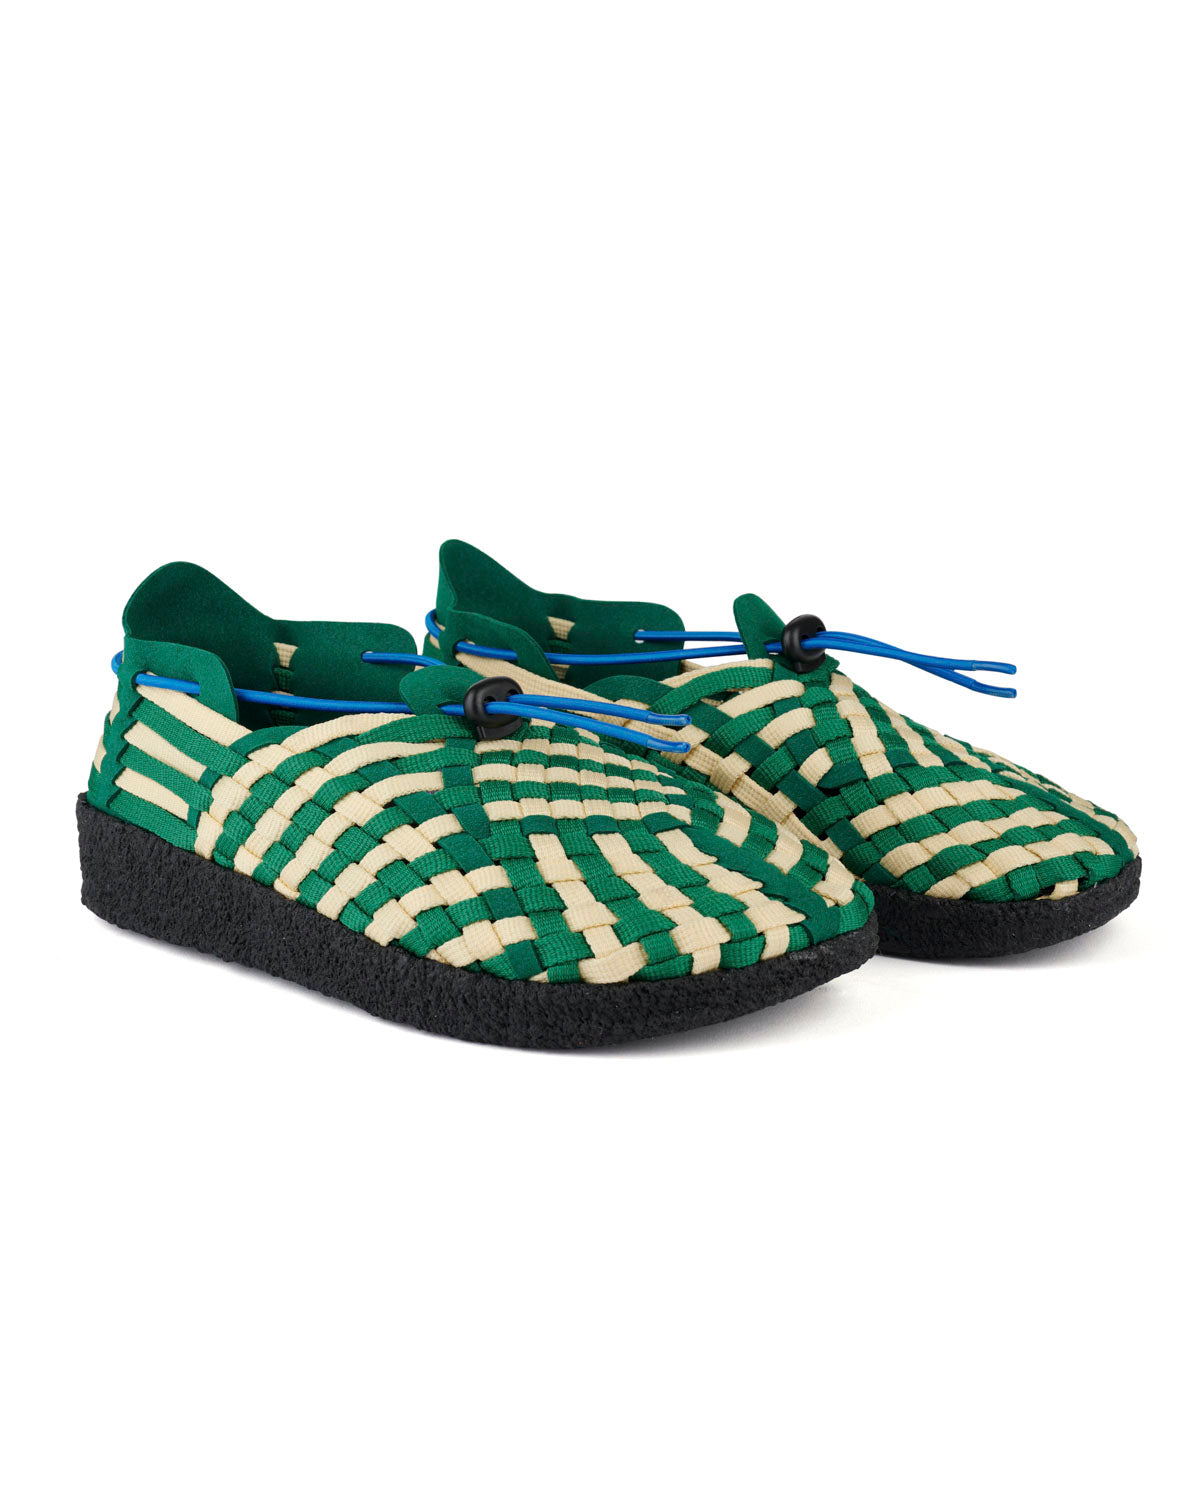 Men's Malibu Latigo Woven Shoe - Green/Natural/Black 2